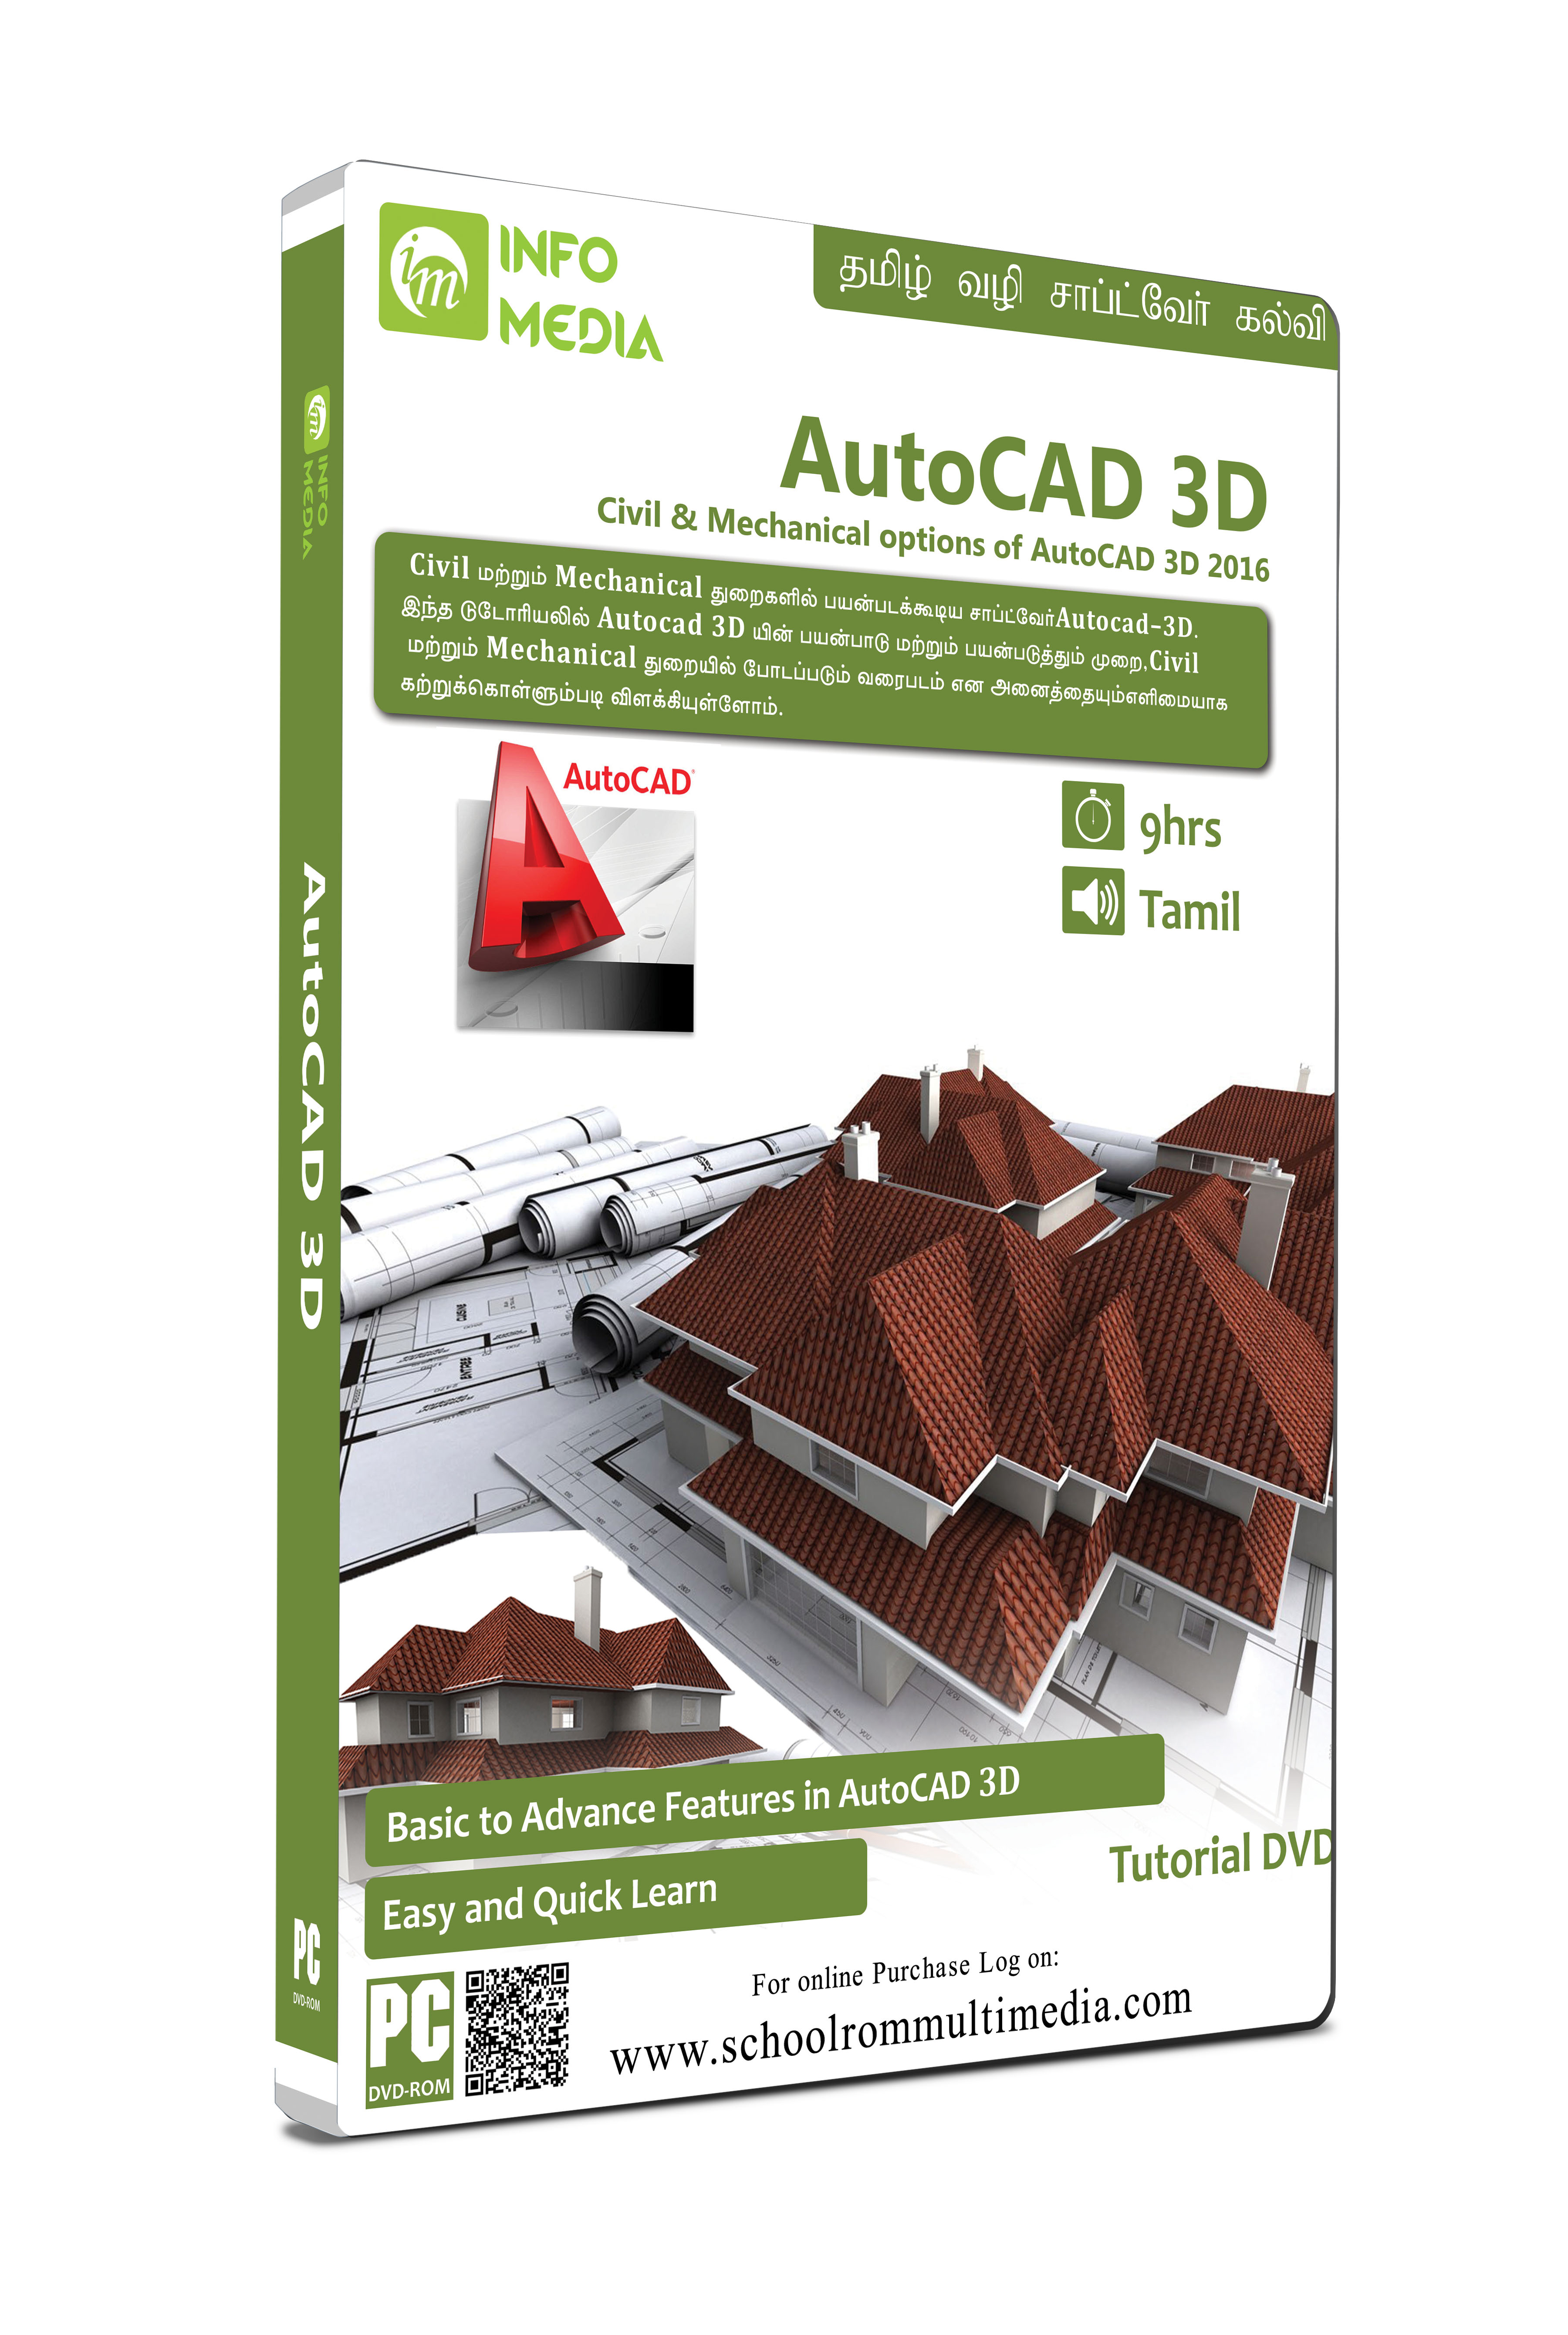 3. Các bước để nâng cao trình độ học thủ thuật Autocad